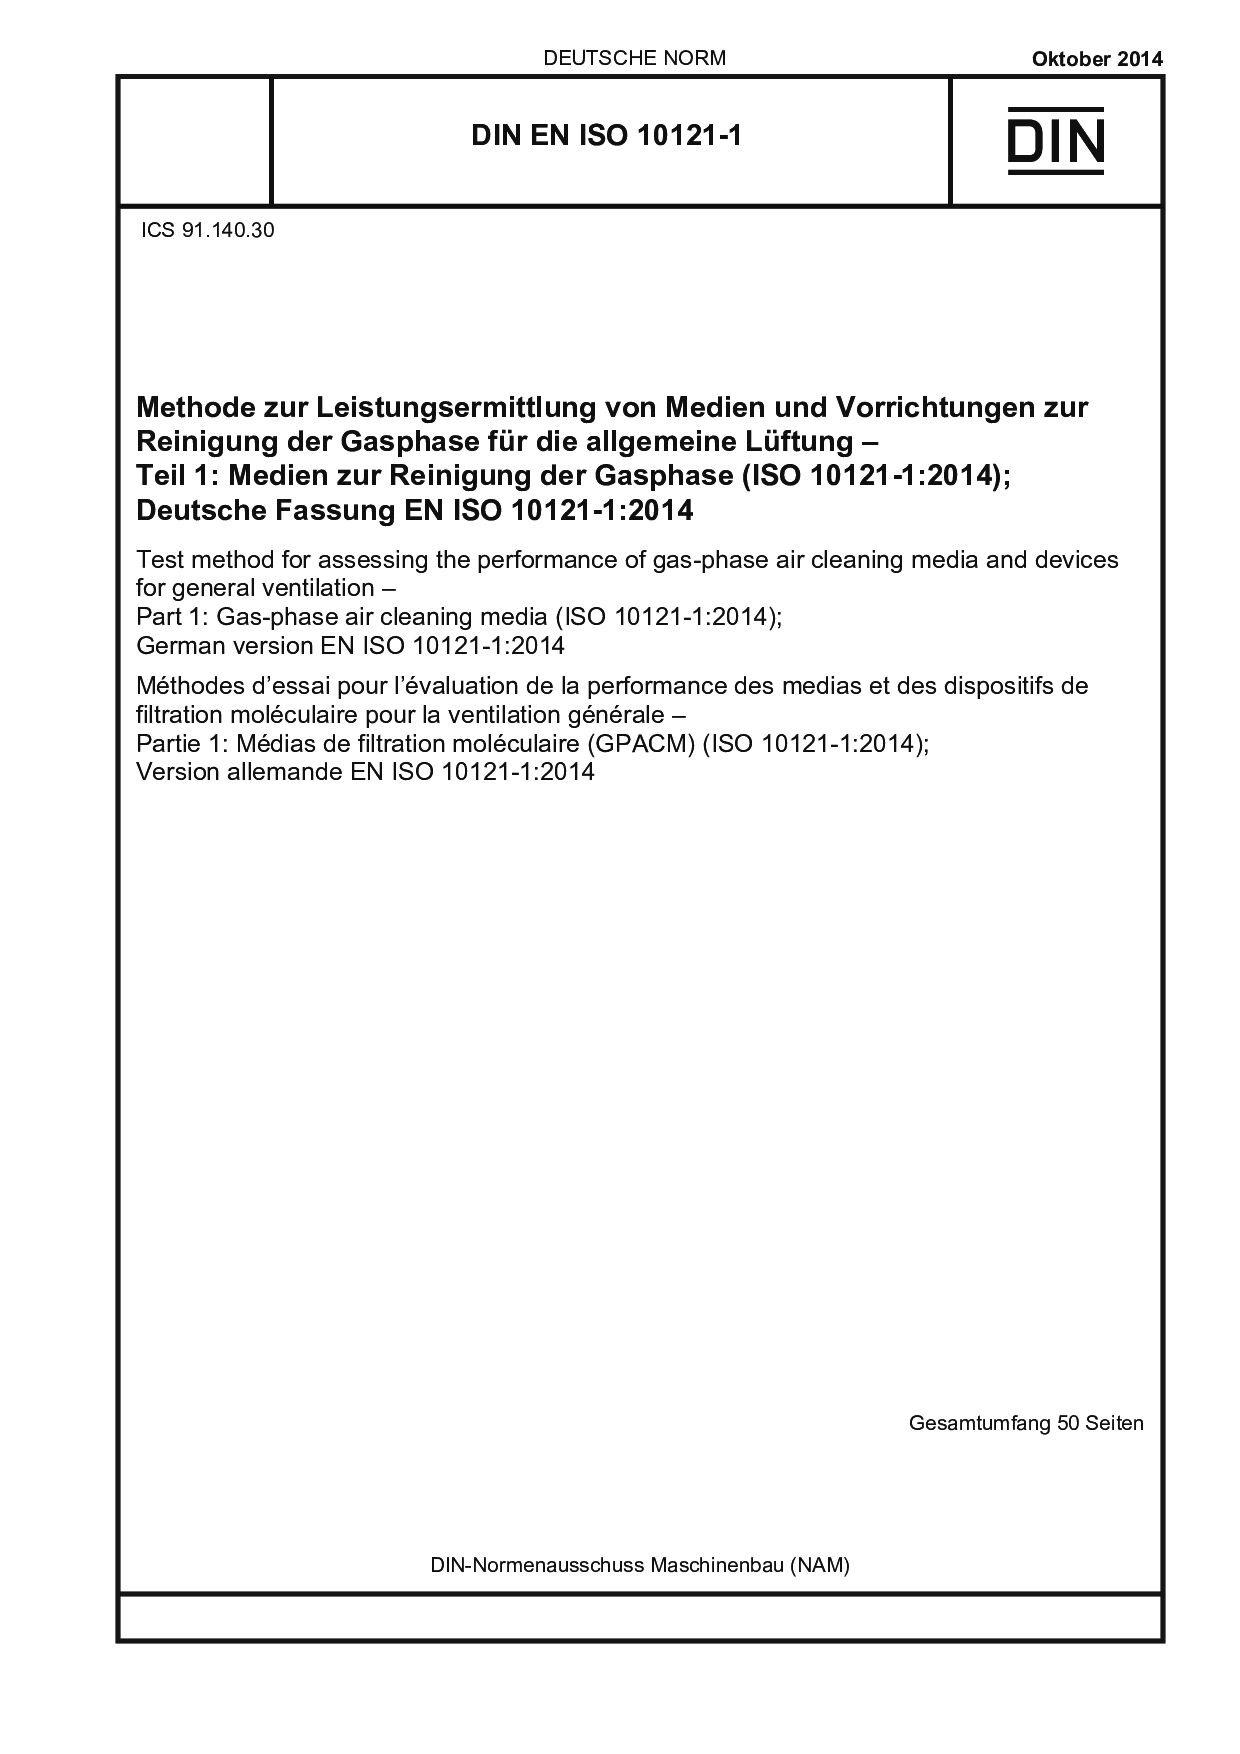 DIN EN ISO 10121-1:2014